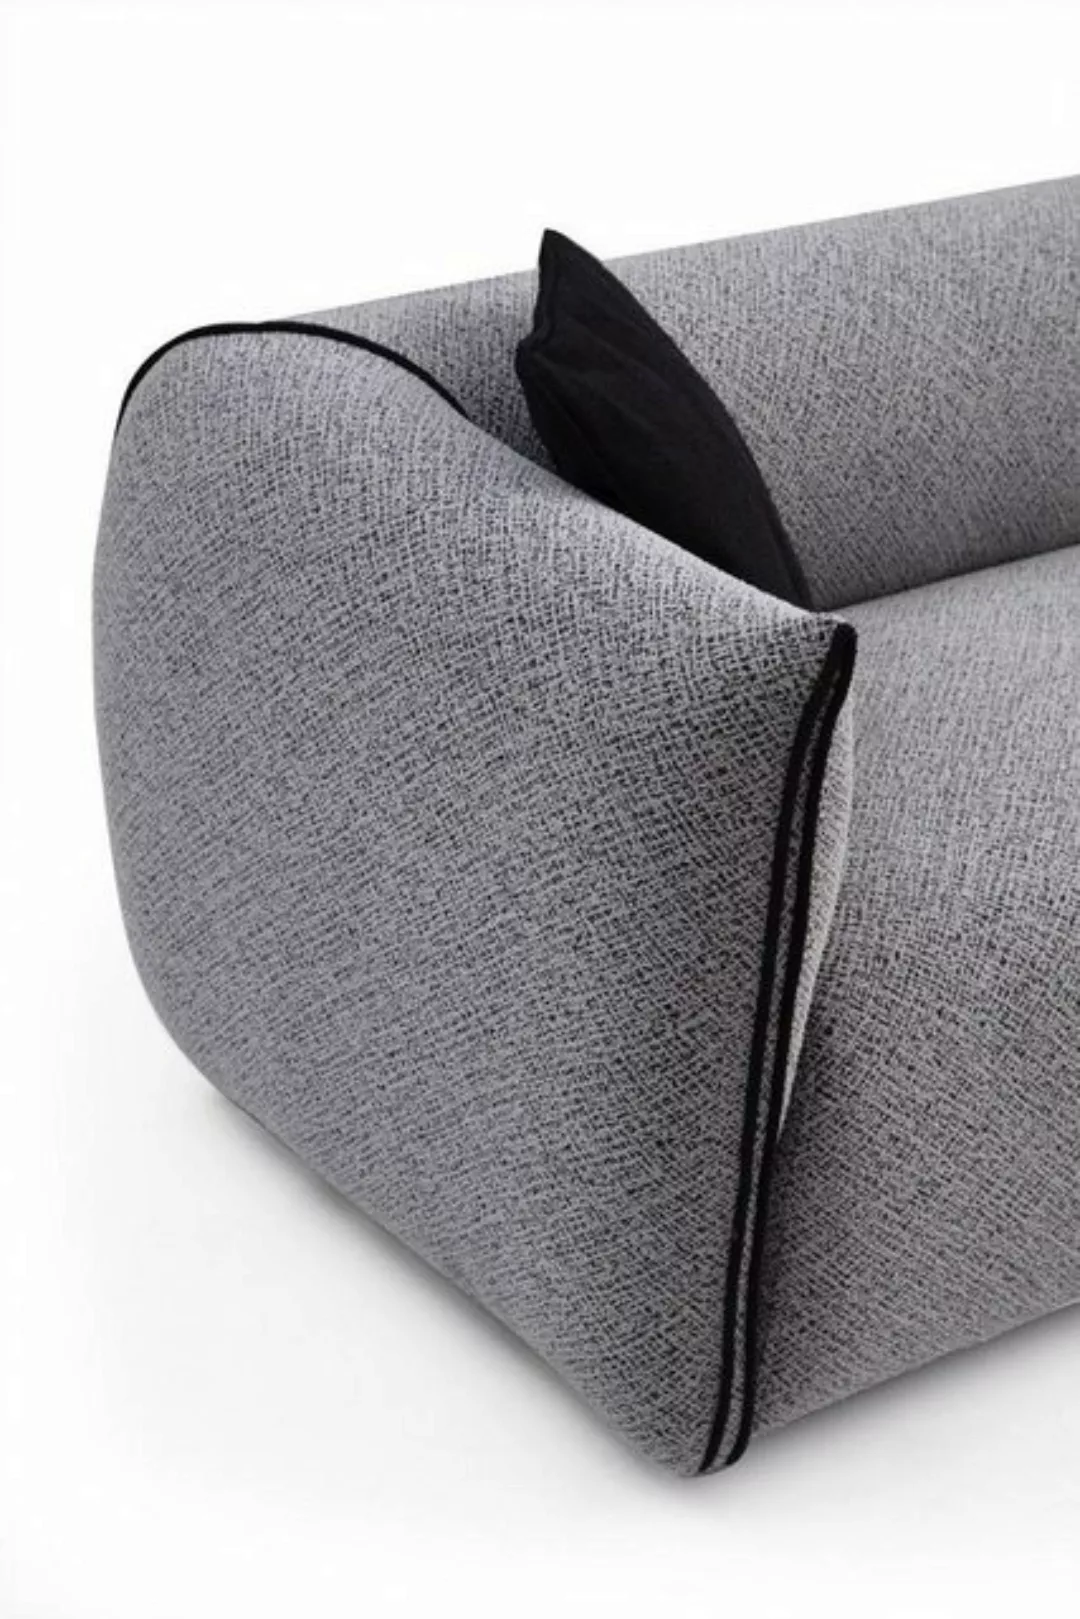 JVmoebel 4-Sitzer Sofas Sitz Stoff Design Dreisitzer Luxus Sofa 4 Sitzer Co günstig online kaufen